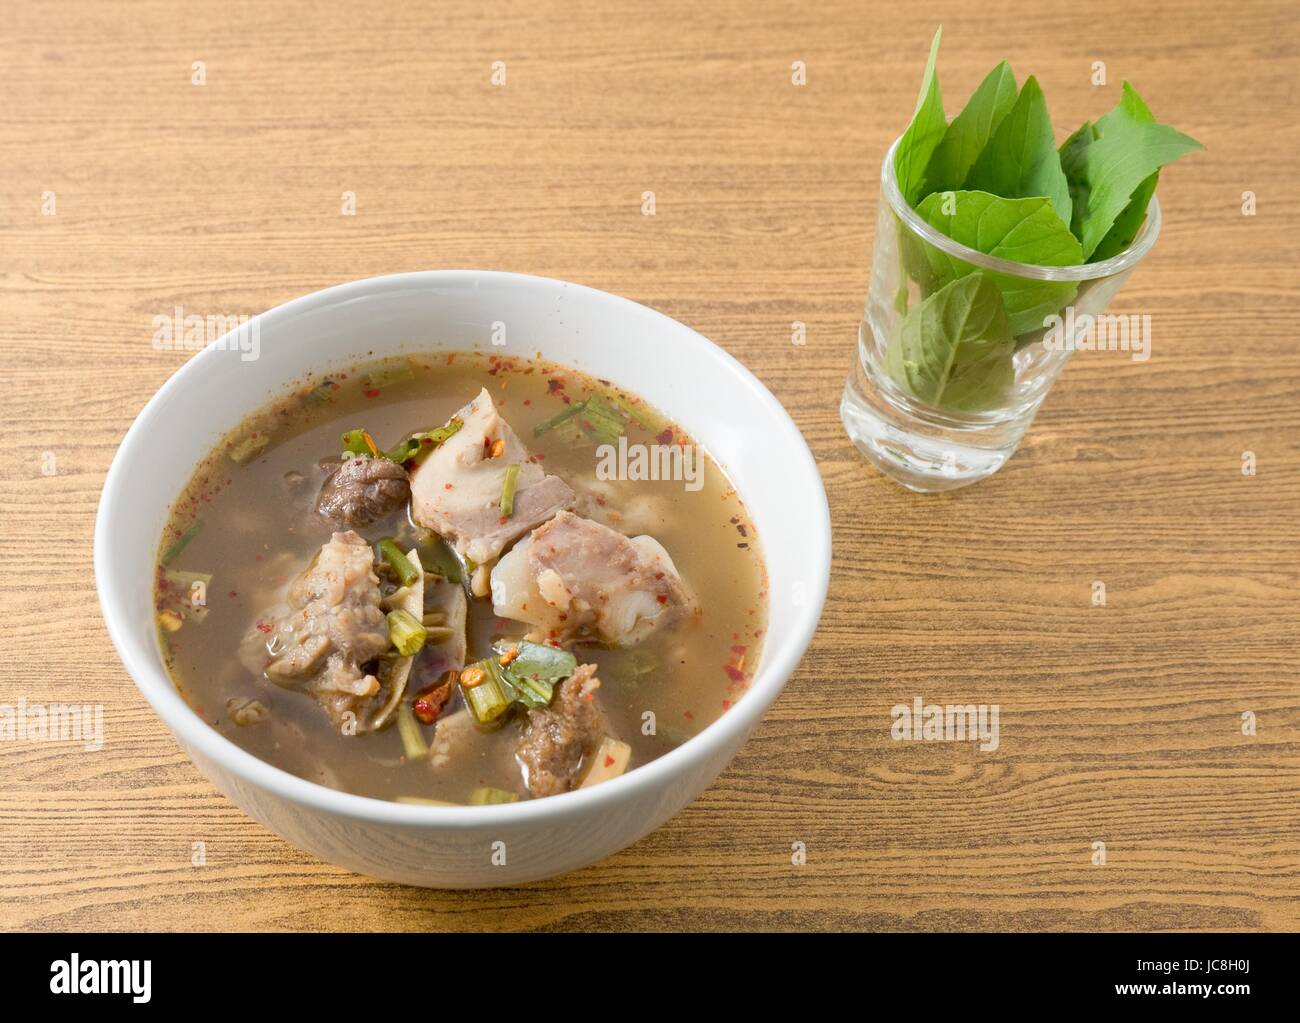 Cucina tailandese e cibo, una ciotola di Chiara piccante e aspro zuppa con le interiora dei bovini. Foto Stock